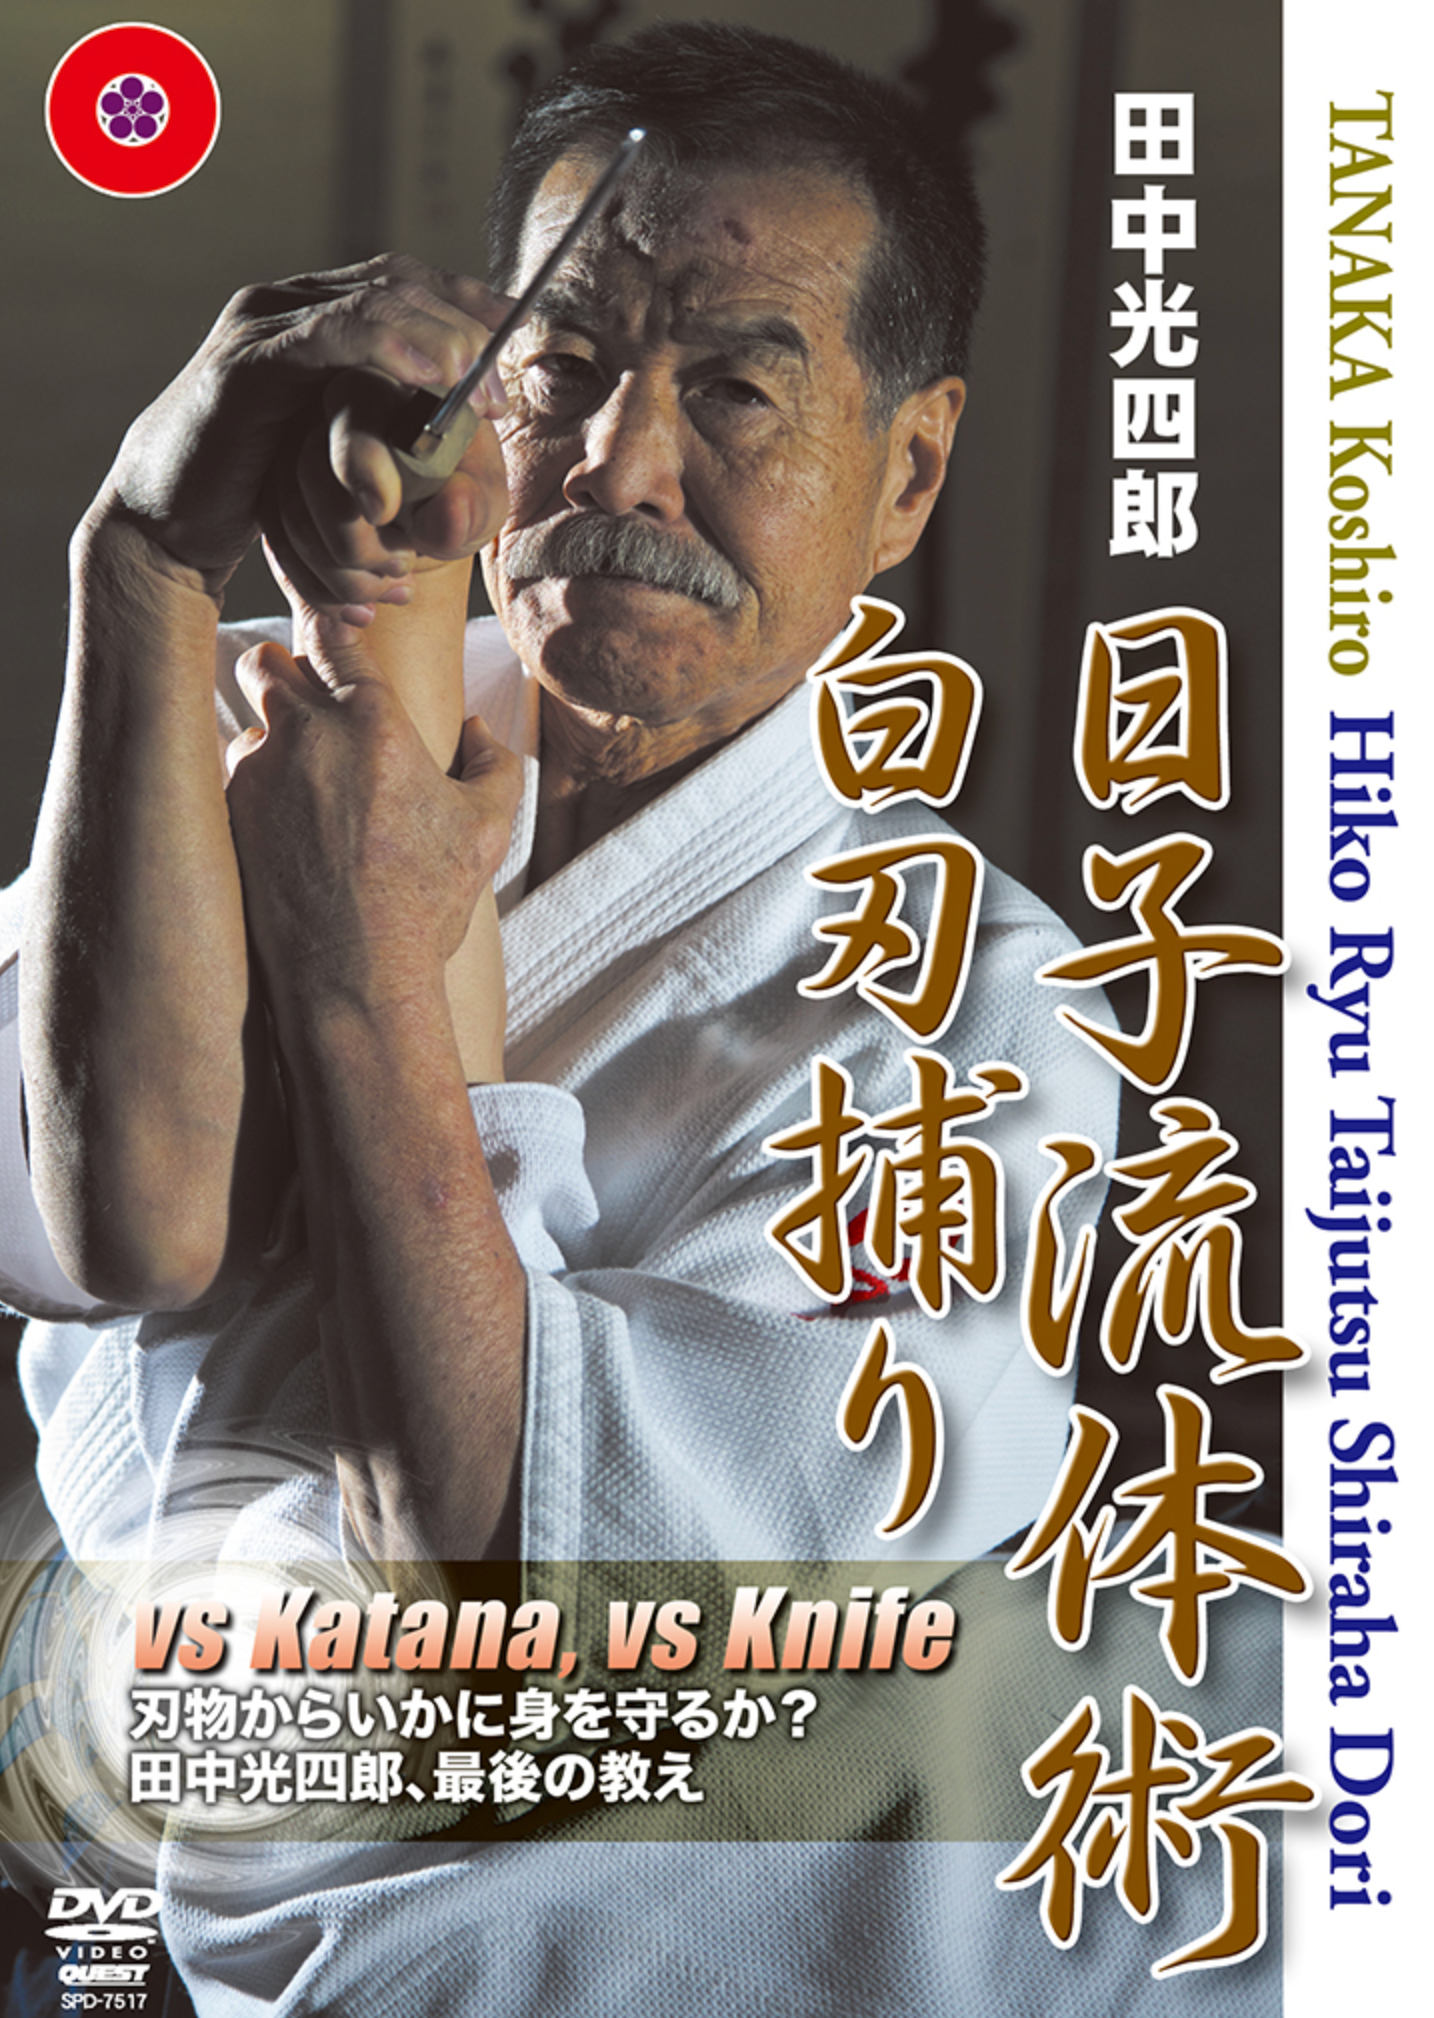 Hiko Ryu Taijutsu Shiraha Dori DVD by Koshiro Tanaka - Budovideos Inc